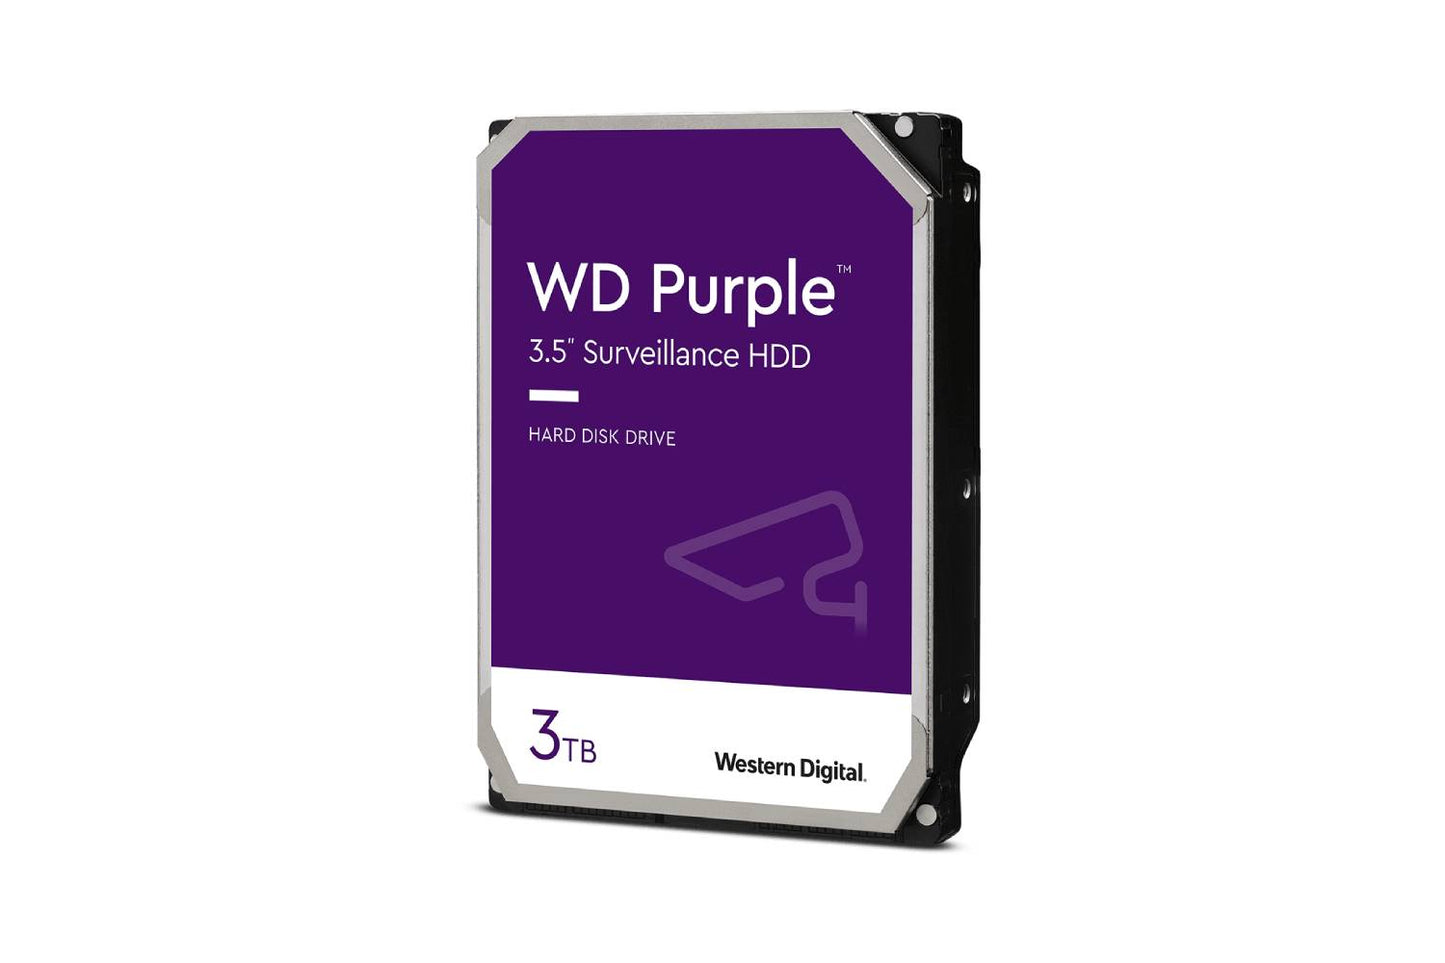 WD Purple 3TB Surveillance Hard Drive (WD30PURZ)